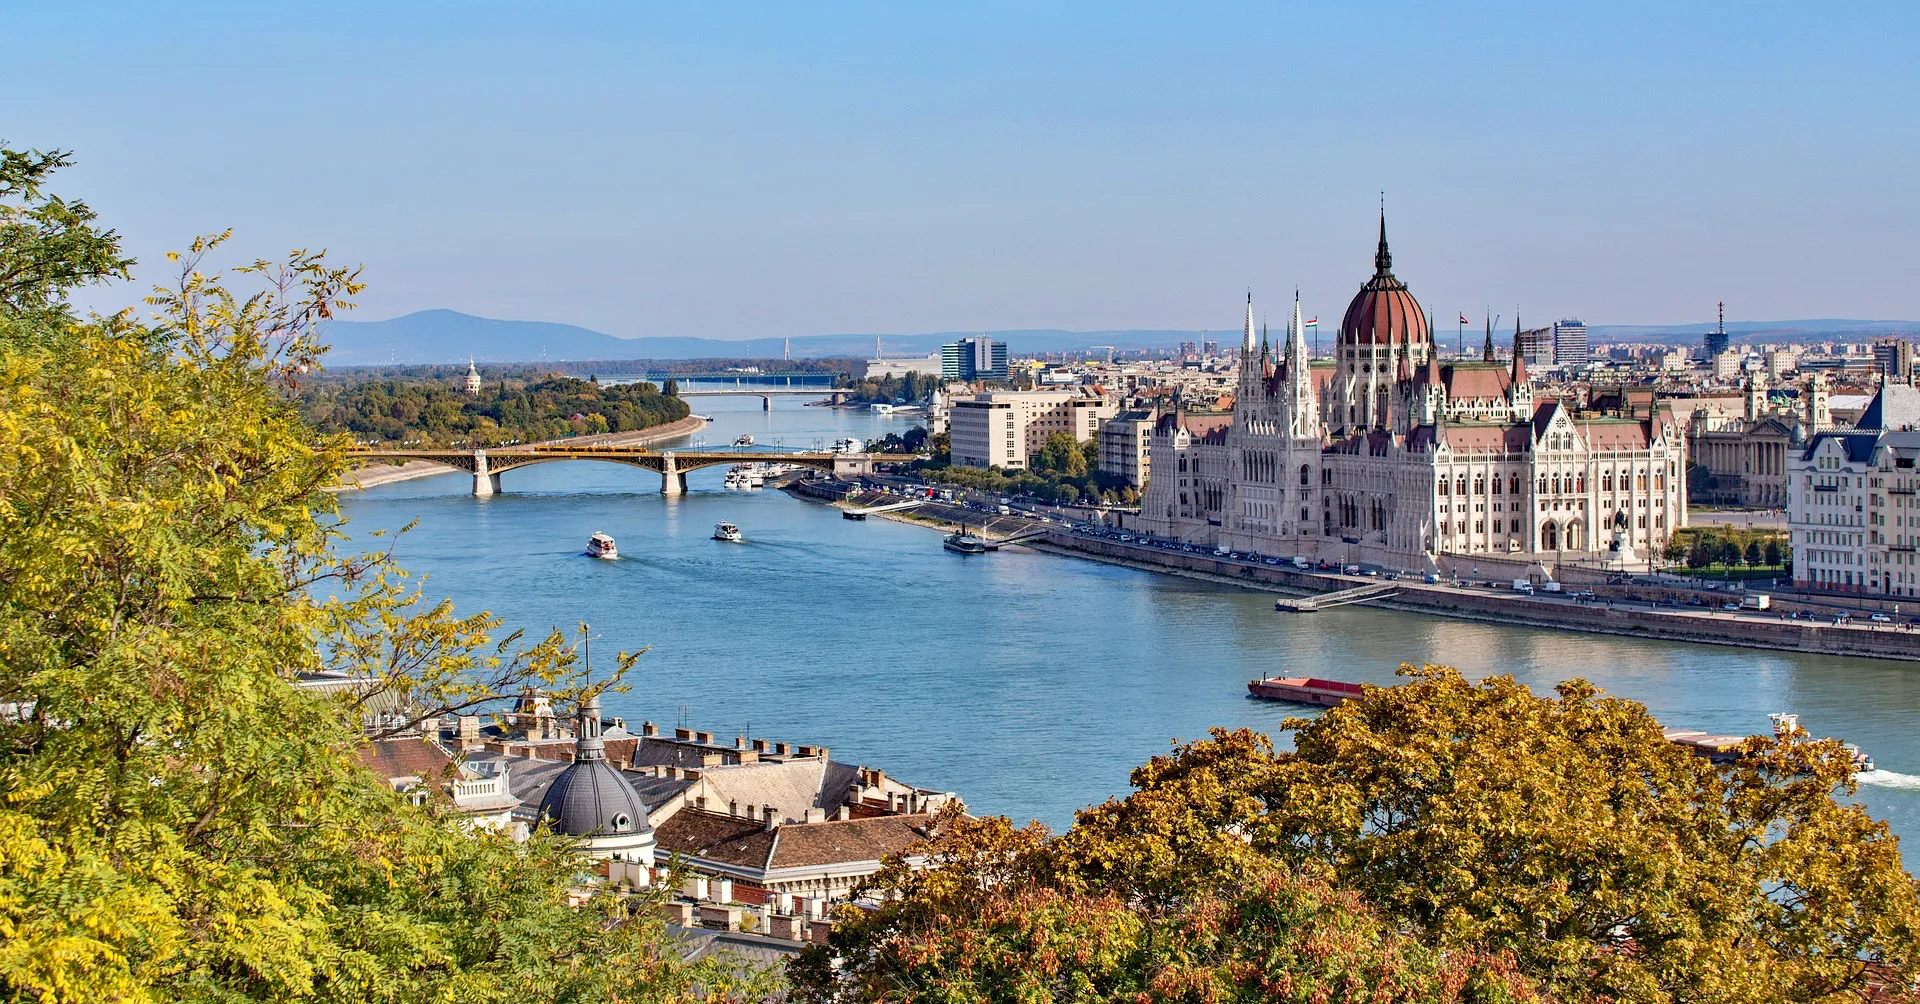 Budimpešta, mesto burne zgodovine in tradicije